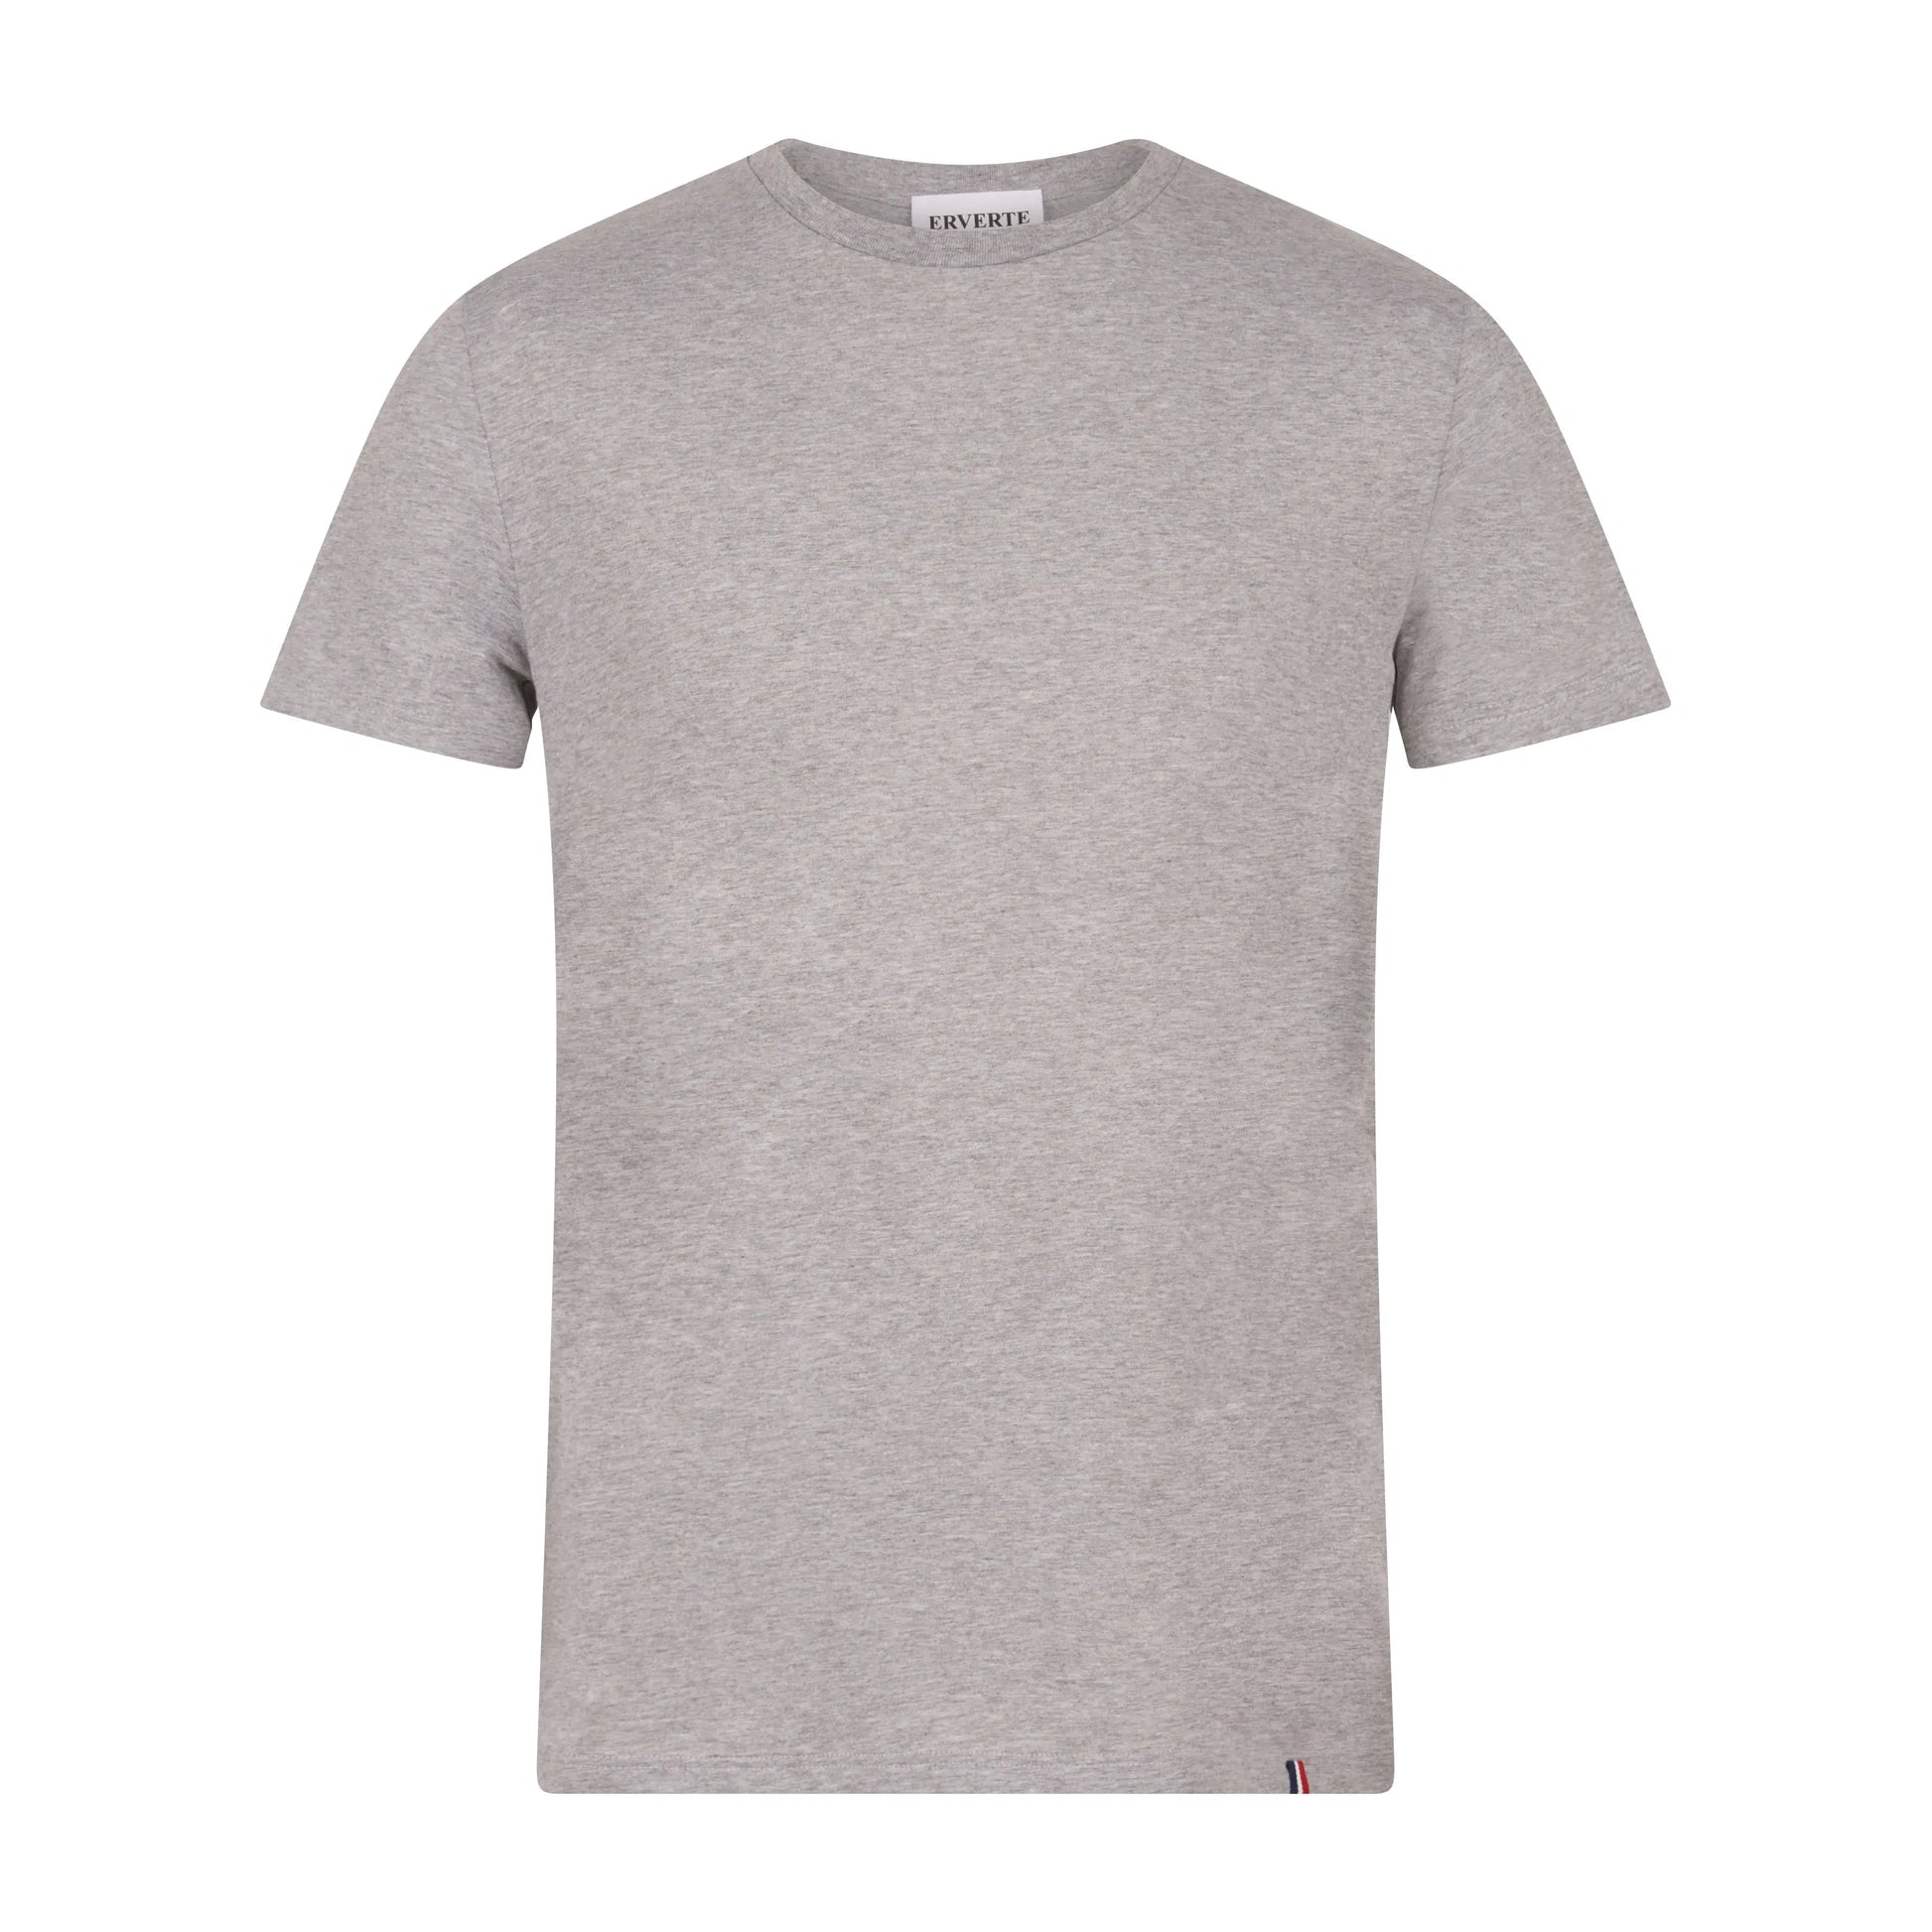 Grey Cotton T-Shirt | Classis Grey T-Shirt | Erverte Paris